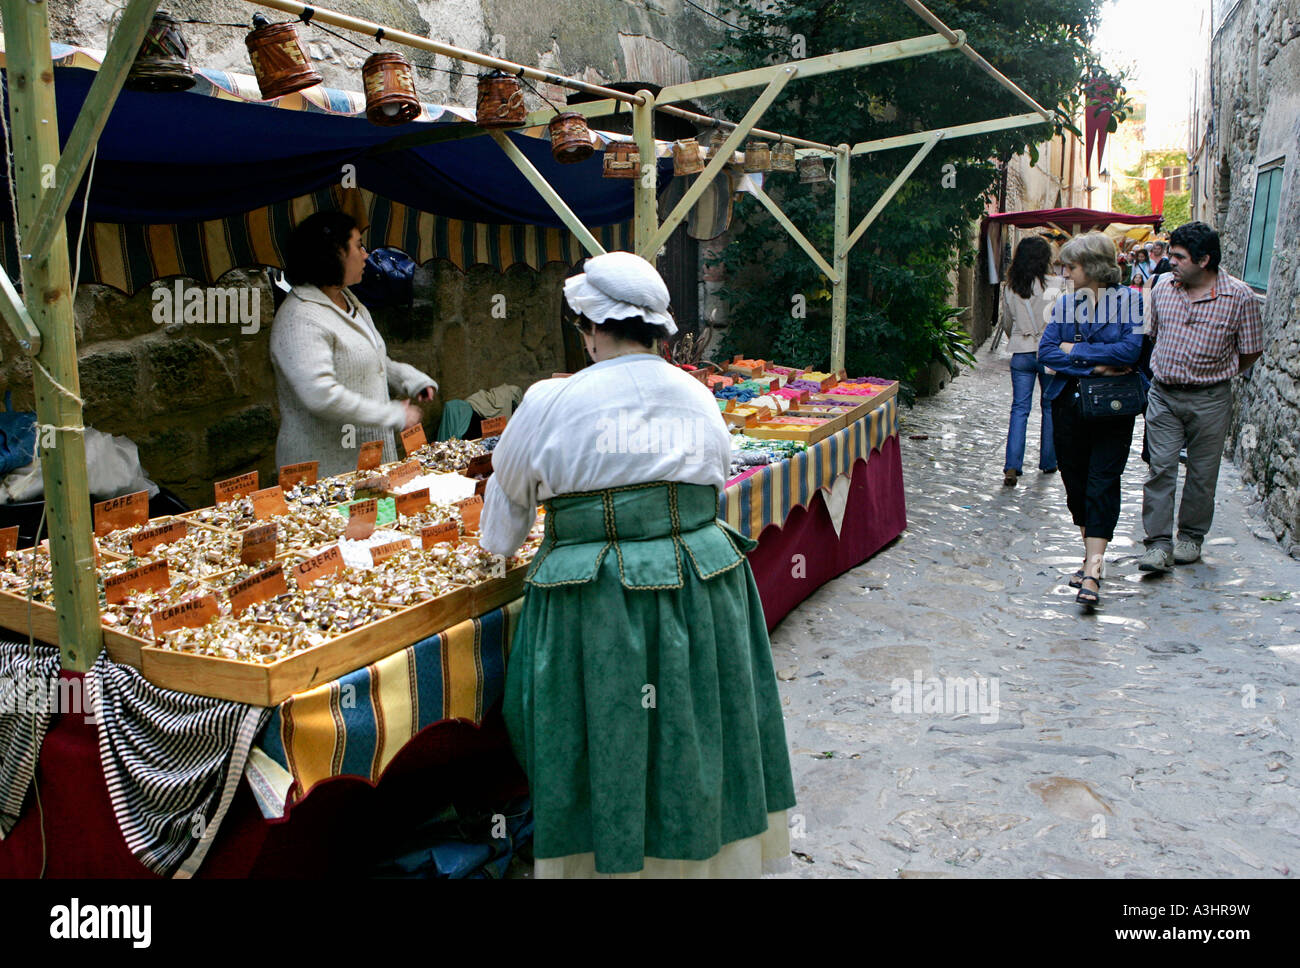 Un traditionnel marché médiéval dans la ville historique de Peratallada, Catalogne, Costa Brava, Espagne Banque D'Images